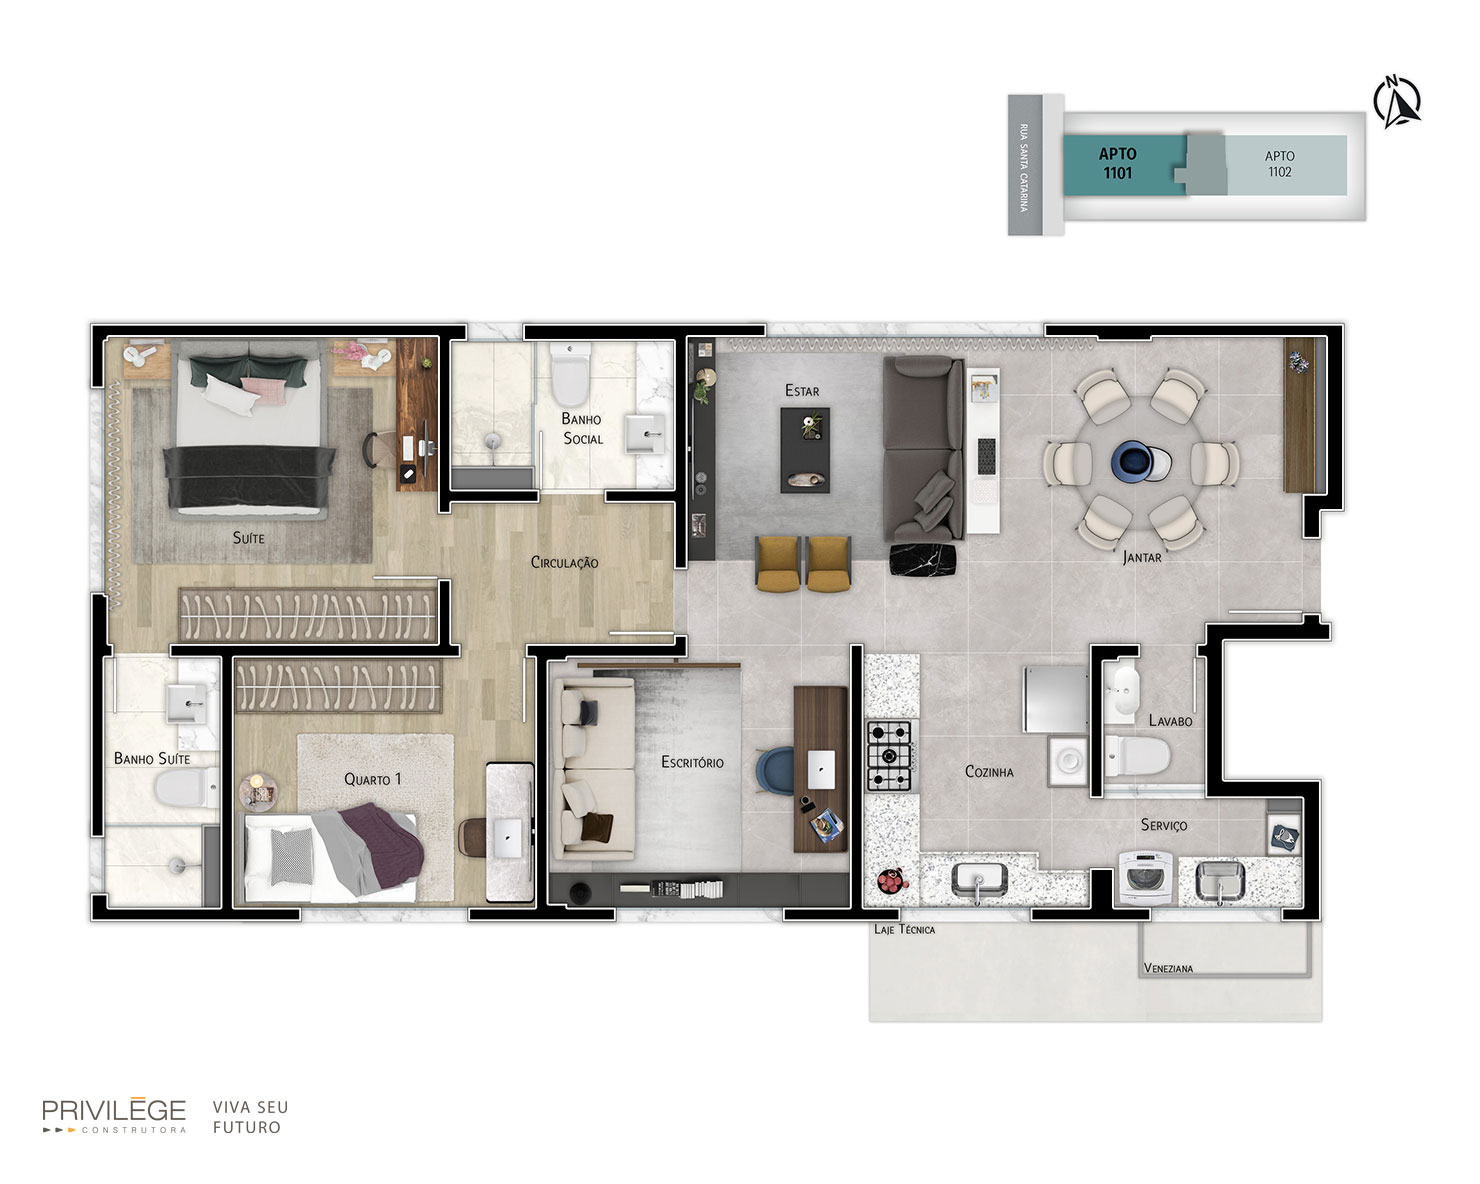 Apartamento 3 quartos com opção de home office- 1101